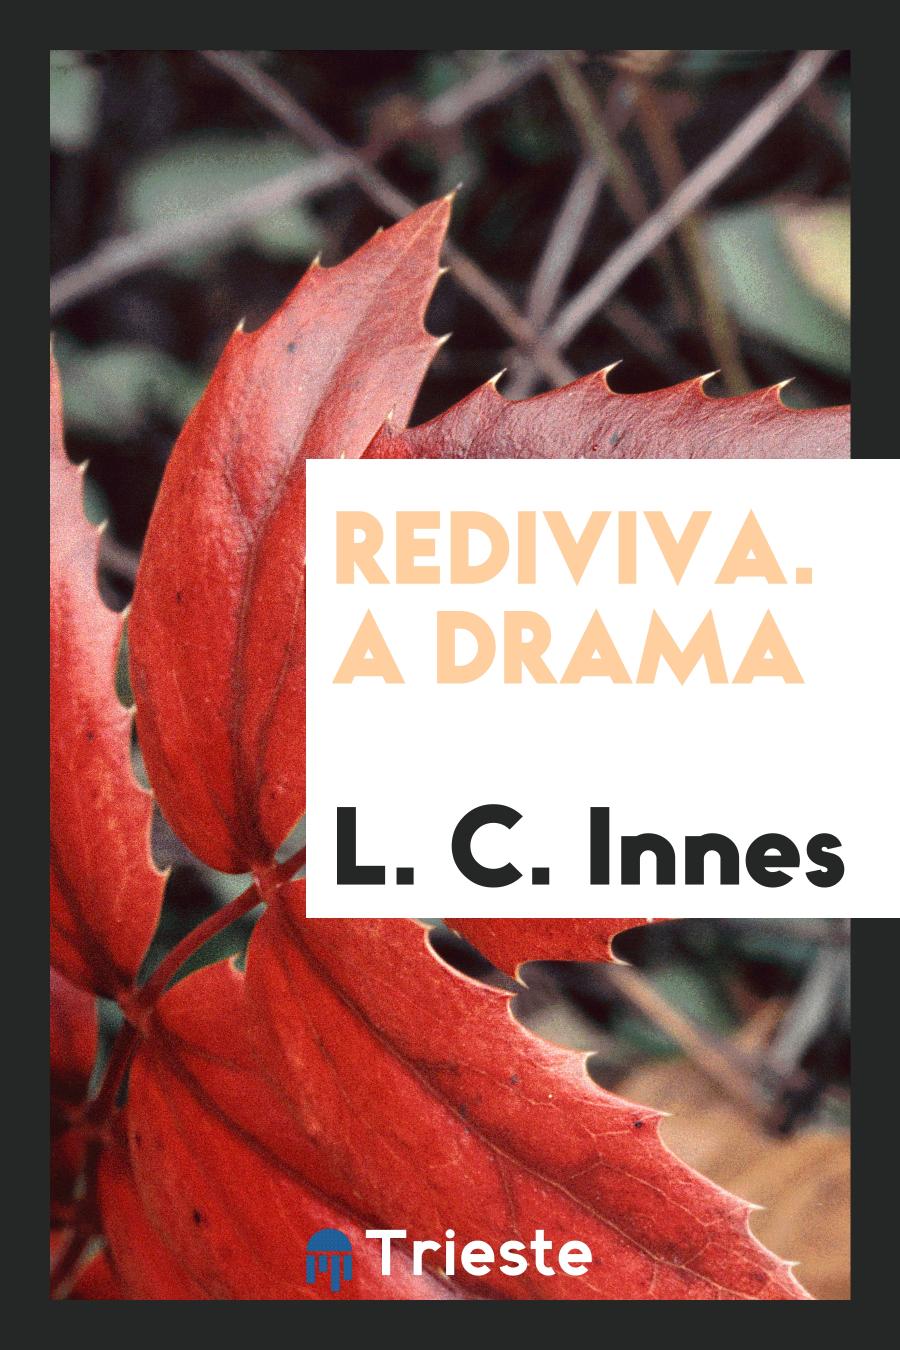 Rediviva. A Drama